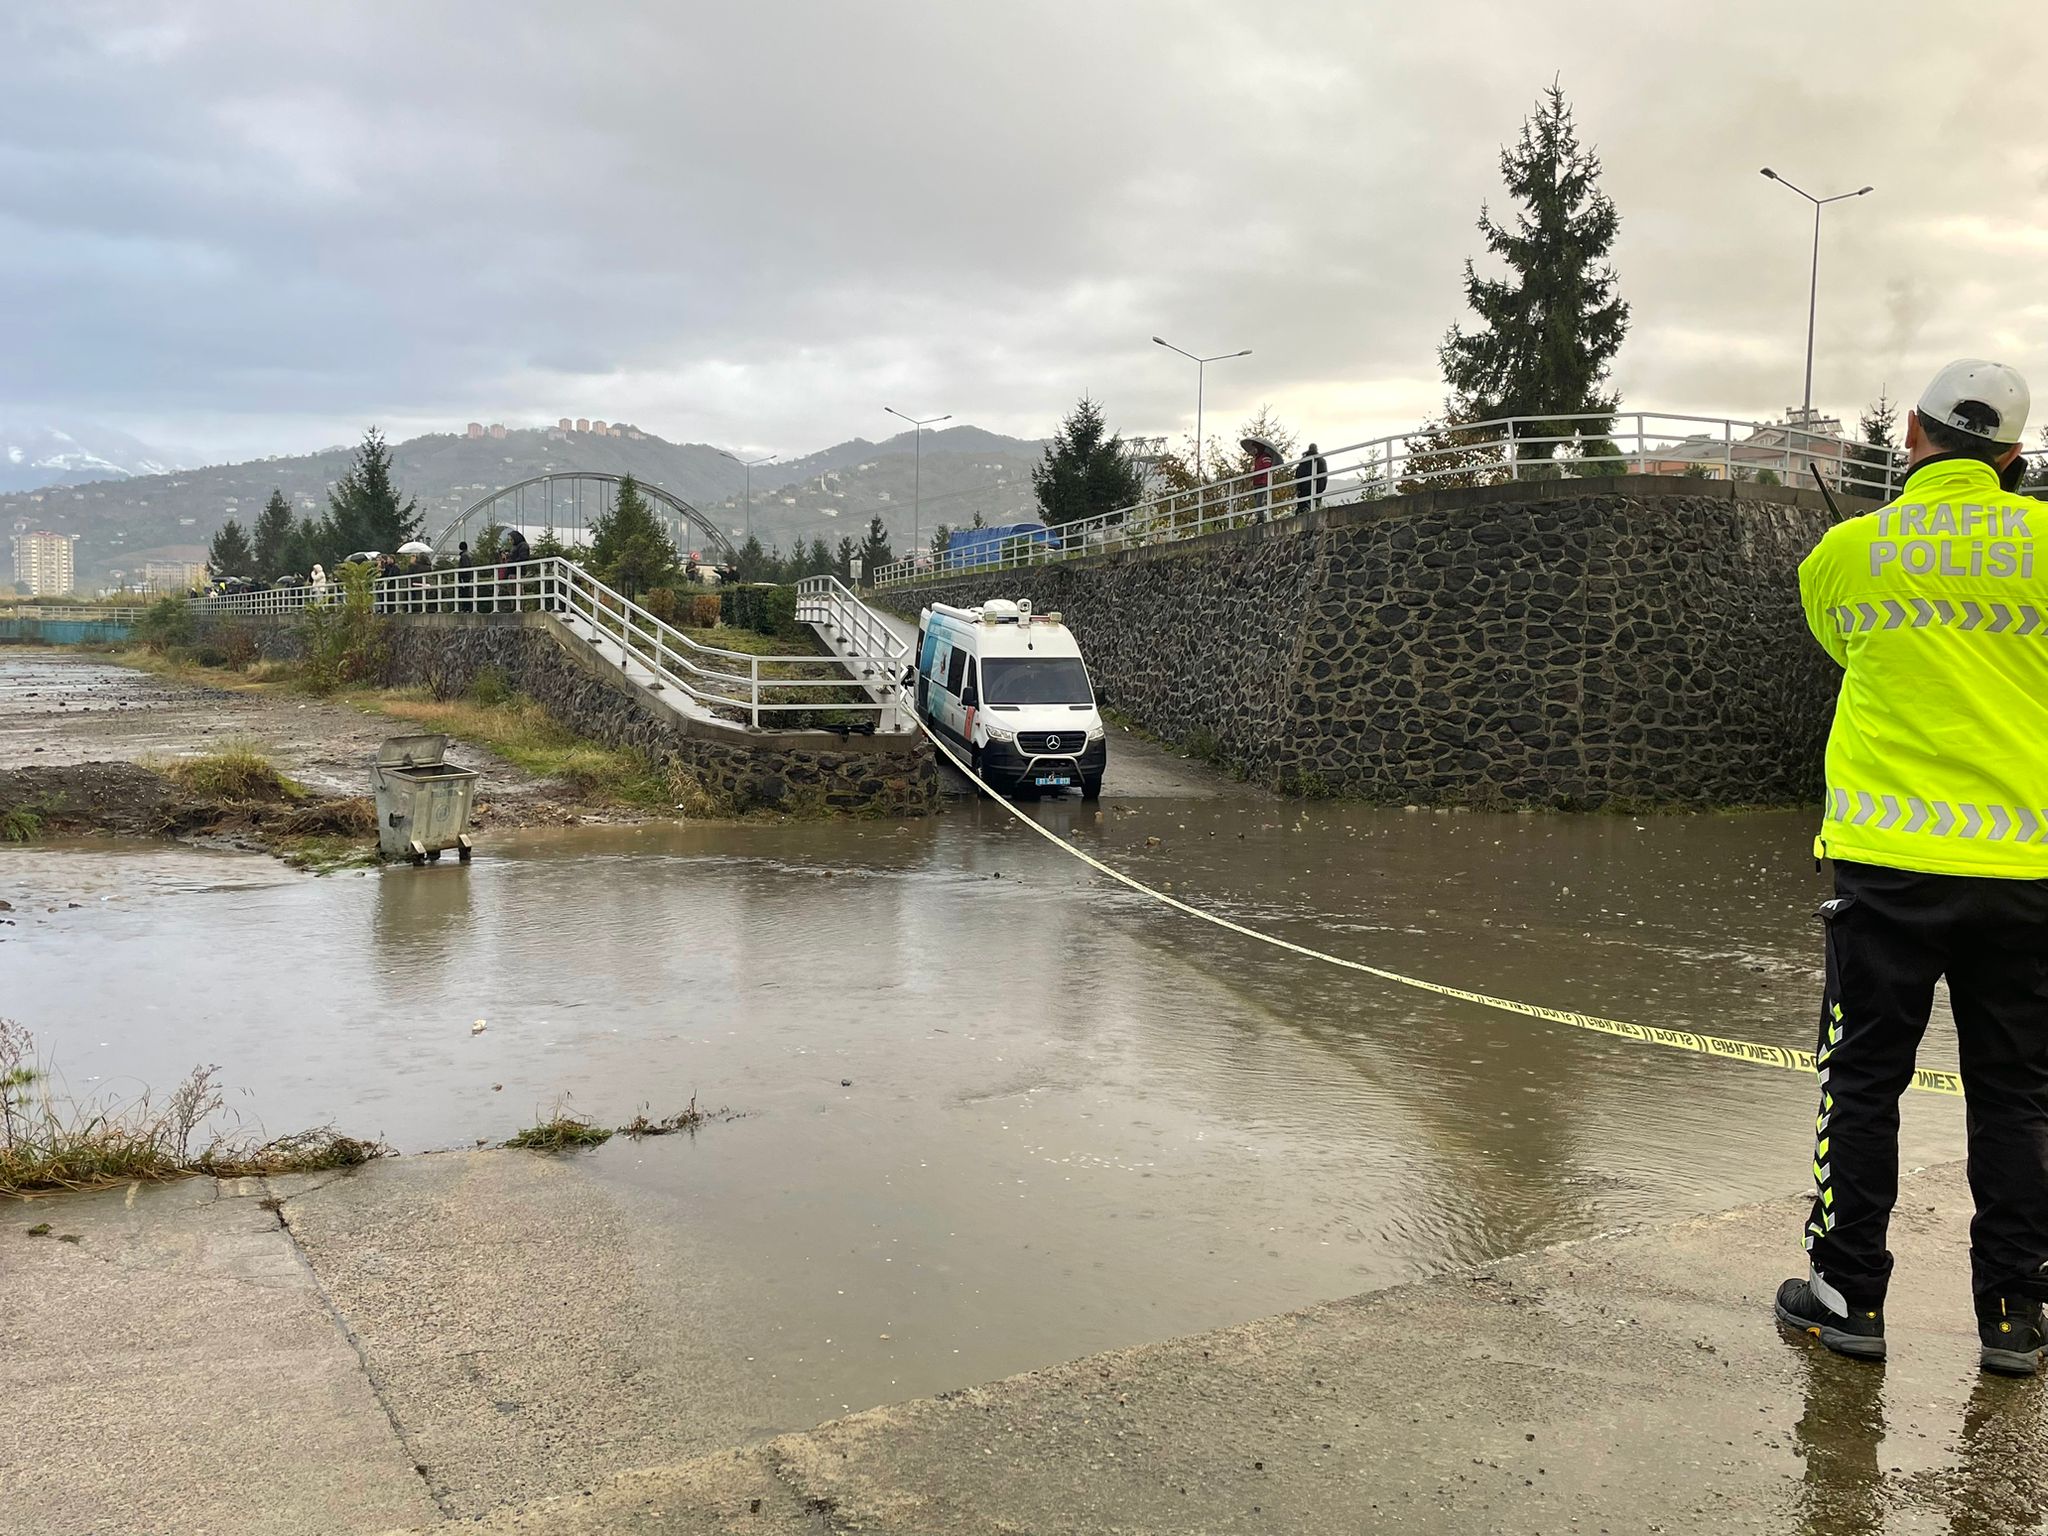 GÜNCELLEME – Trabzon’da fırtına sonucu yükselen dalgalara kapılan 2 kişi kayboldu